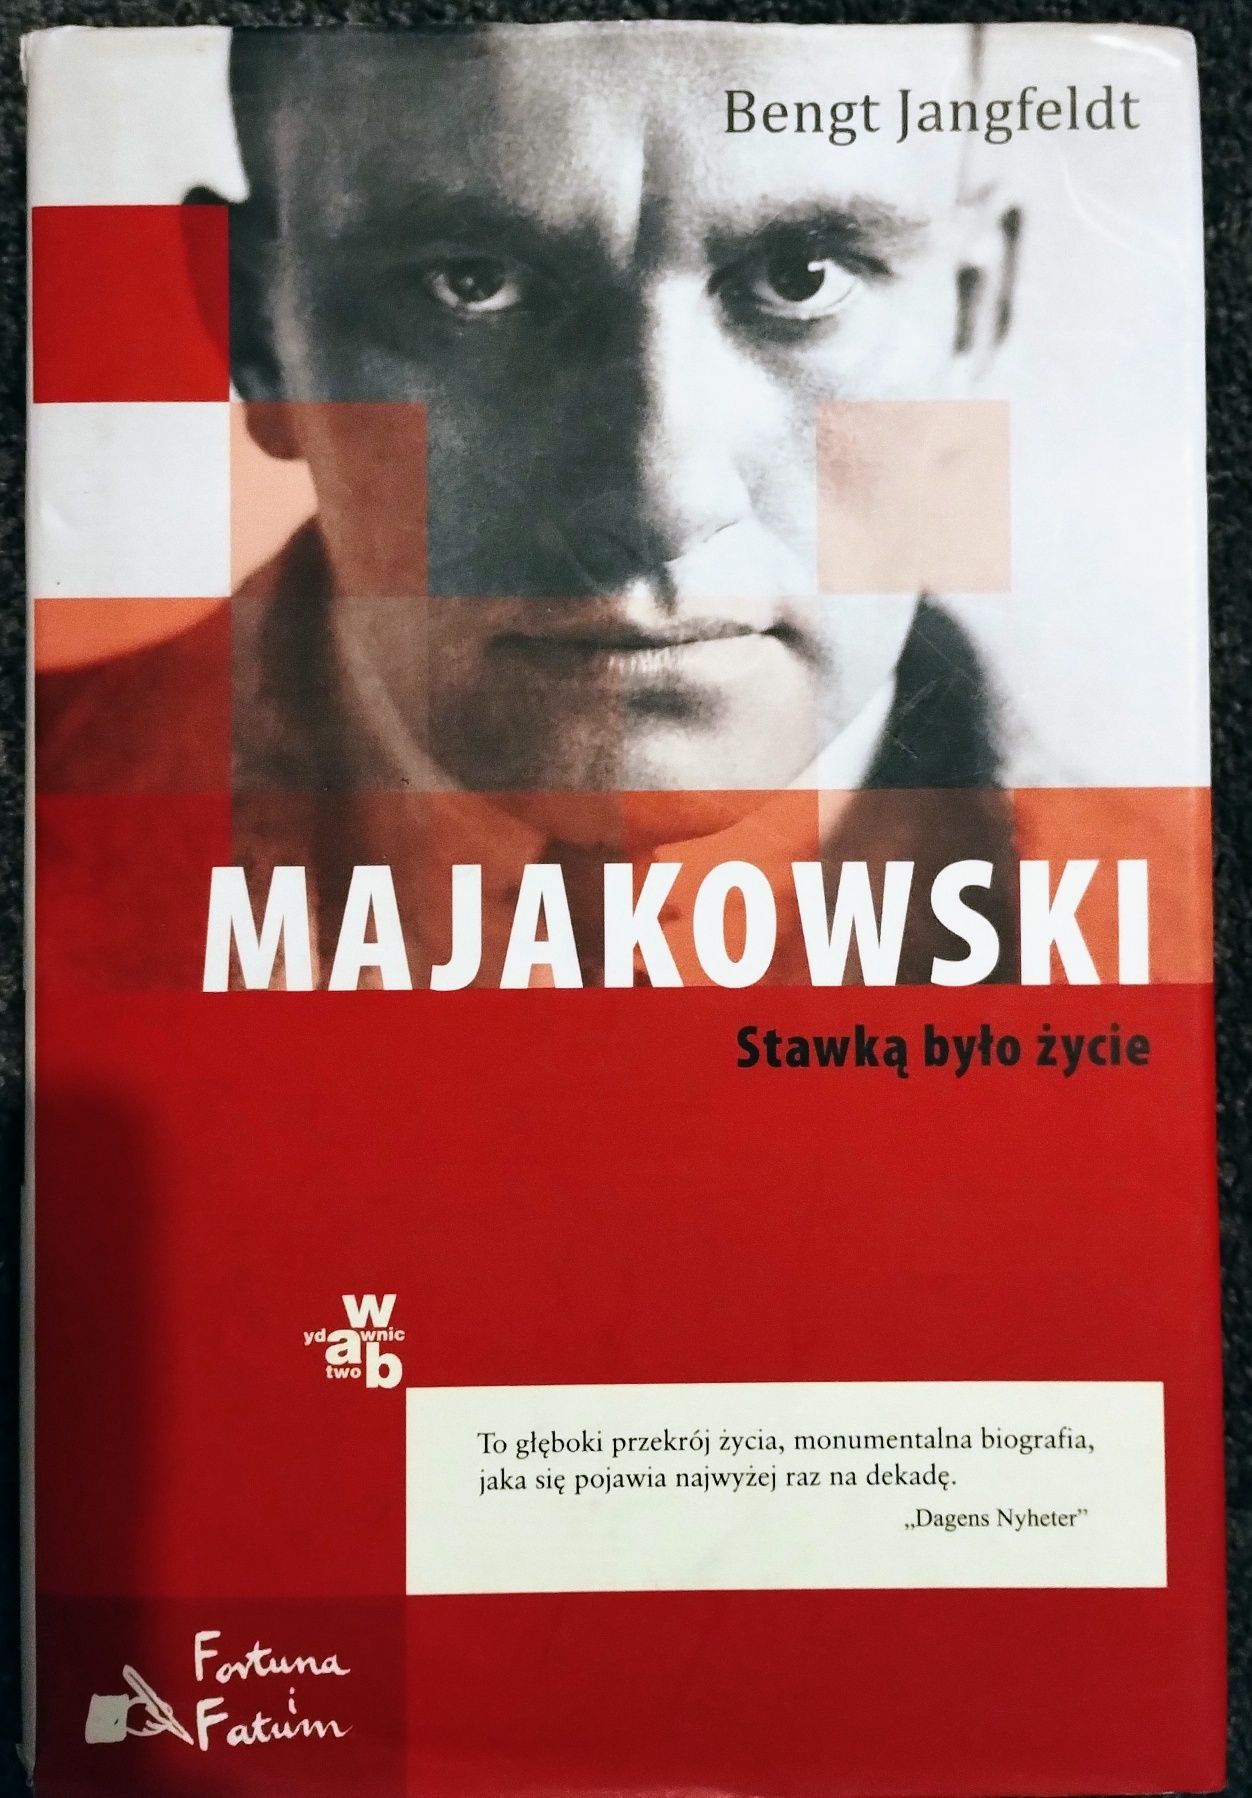 Bengt Jangfeldt "Majakowski. Stawką było życie"